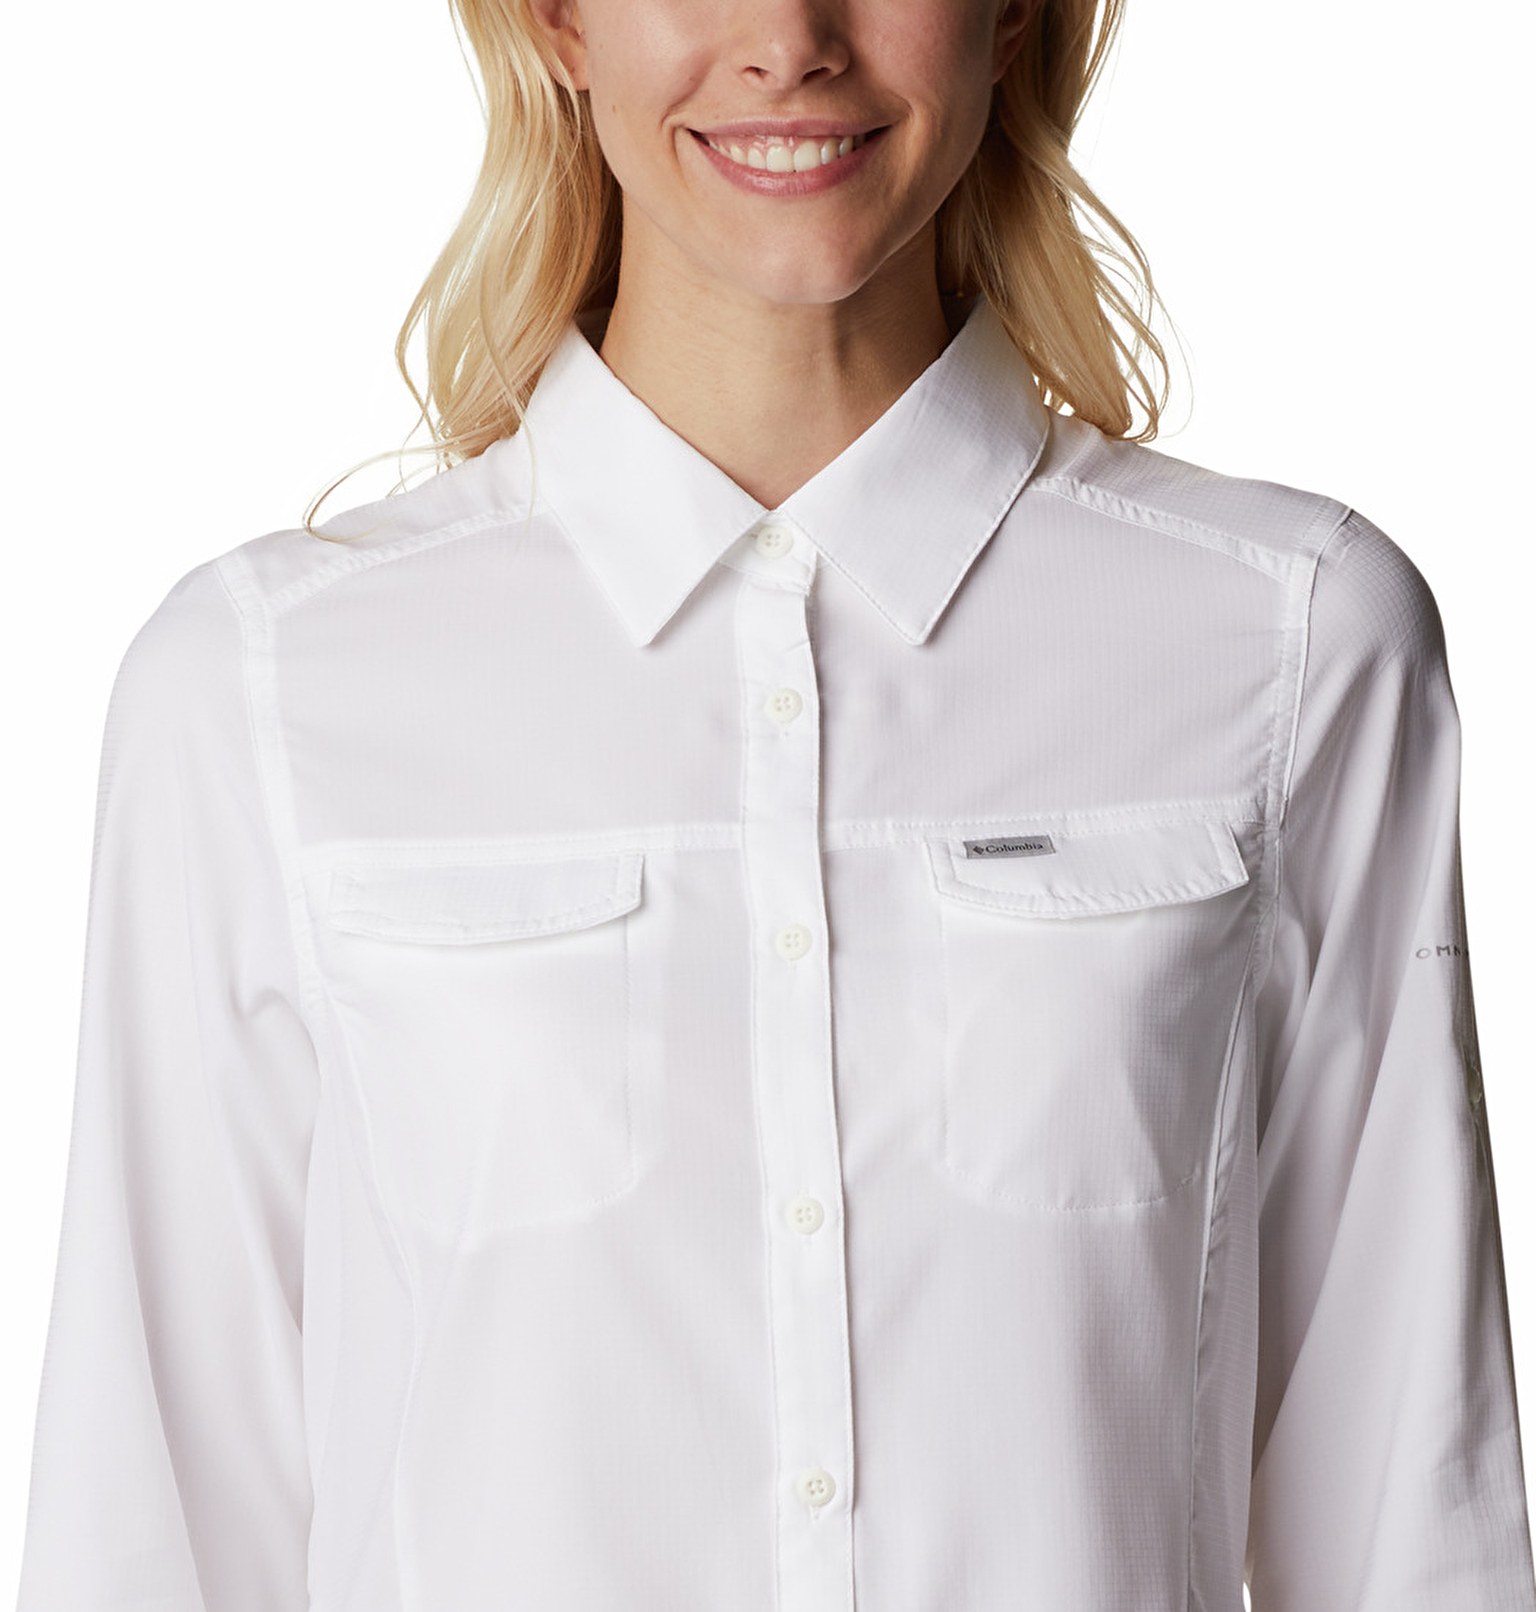 Silver Ridge Lite Kadın Uzun Kollu Gömlek